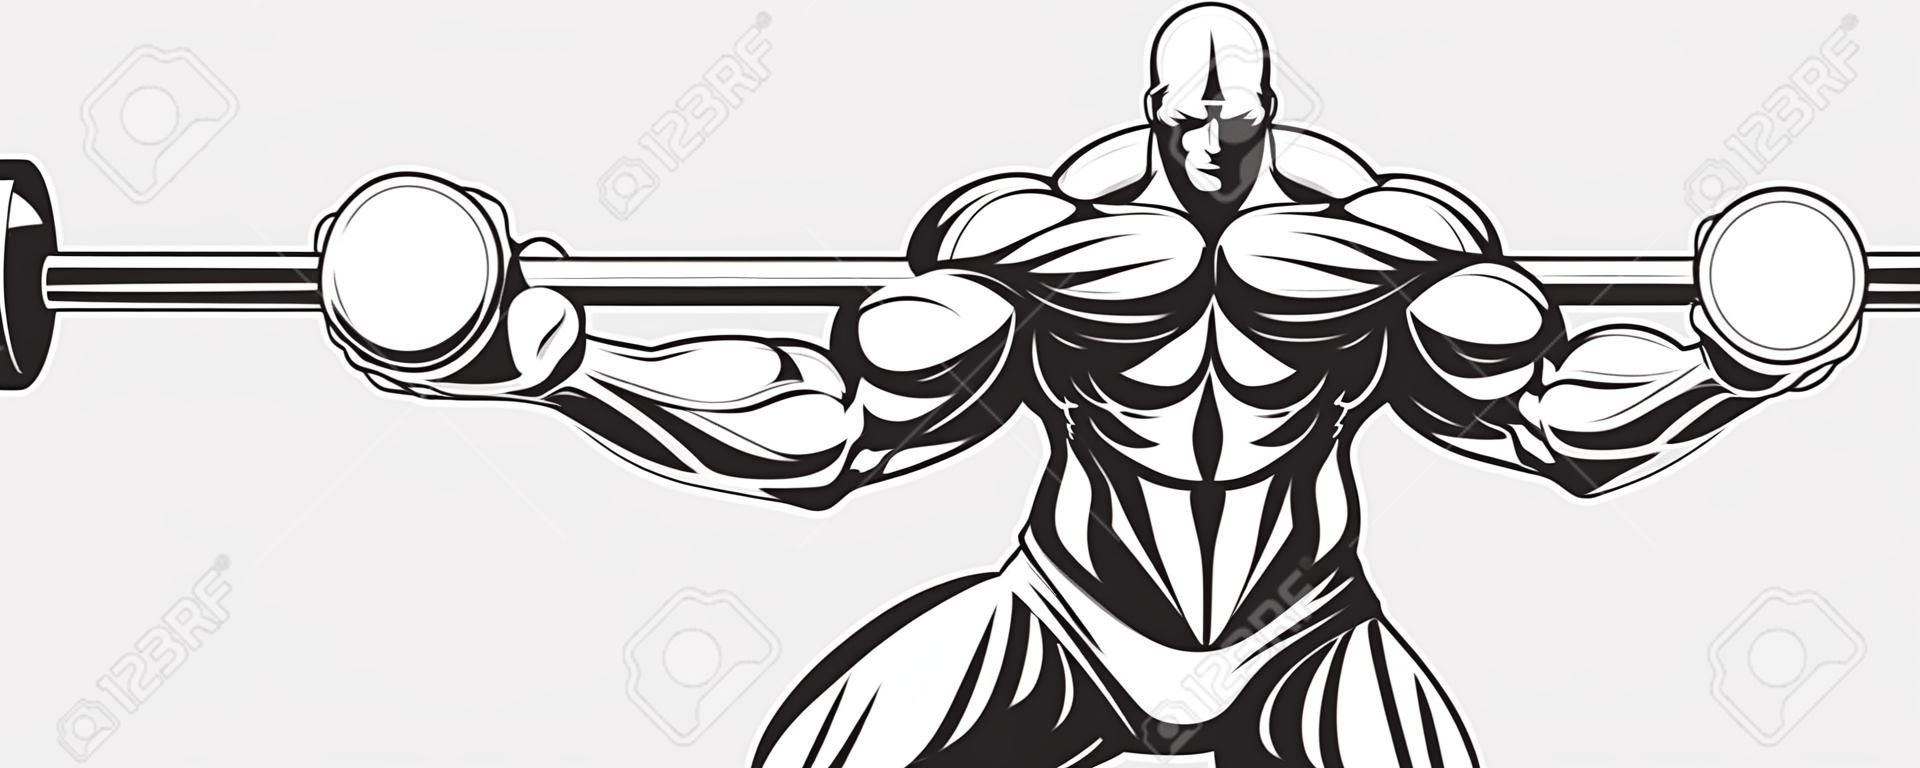 L'illustration d'un bodybuilder effectue un exercice avec une barre.